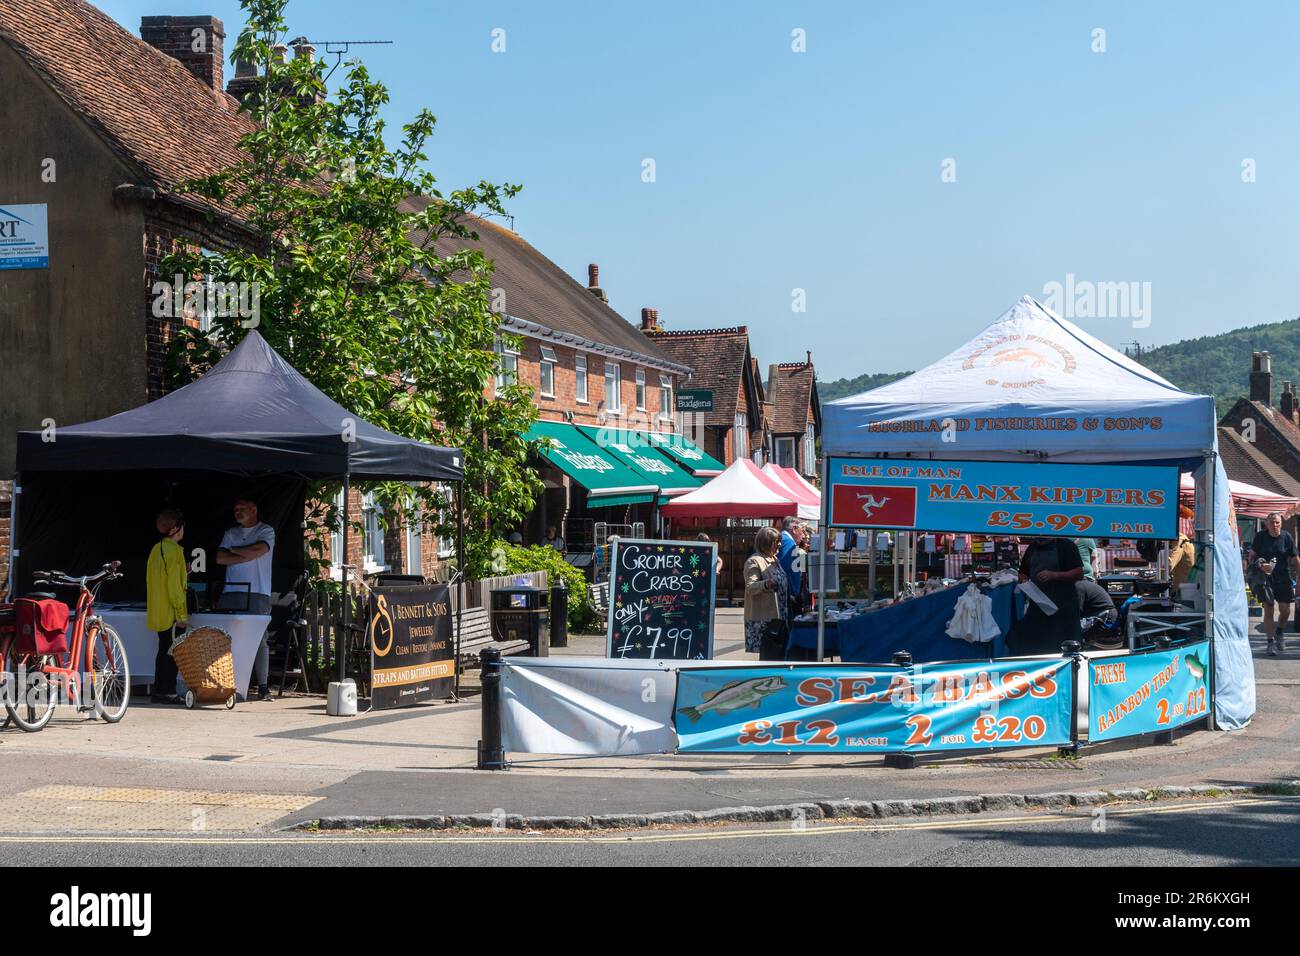 Bancarelle del mercato a Wendover mercato settimanale Giovedi sulla strada principale, Wendover centro città, Buckinghamshire, Inghilterra, Regno Unito Foto Stock